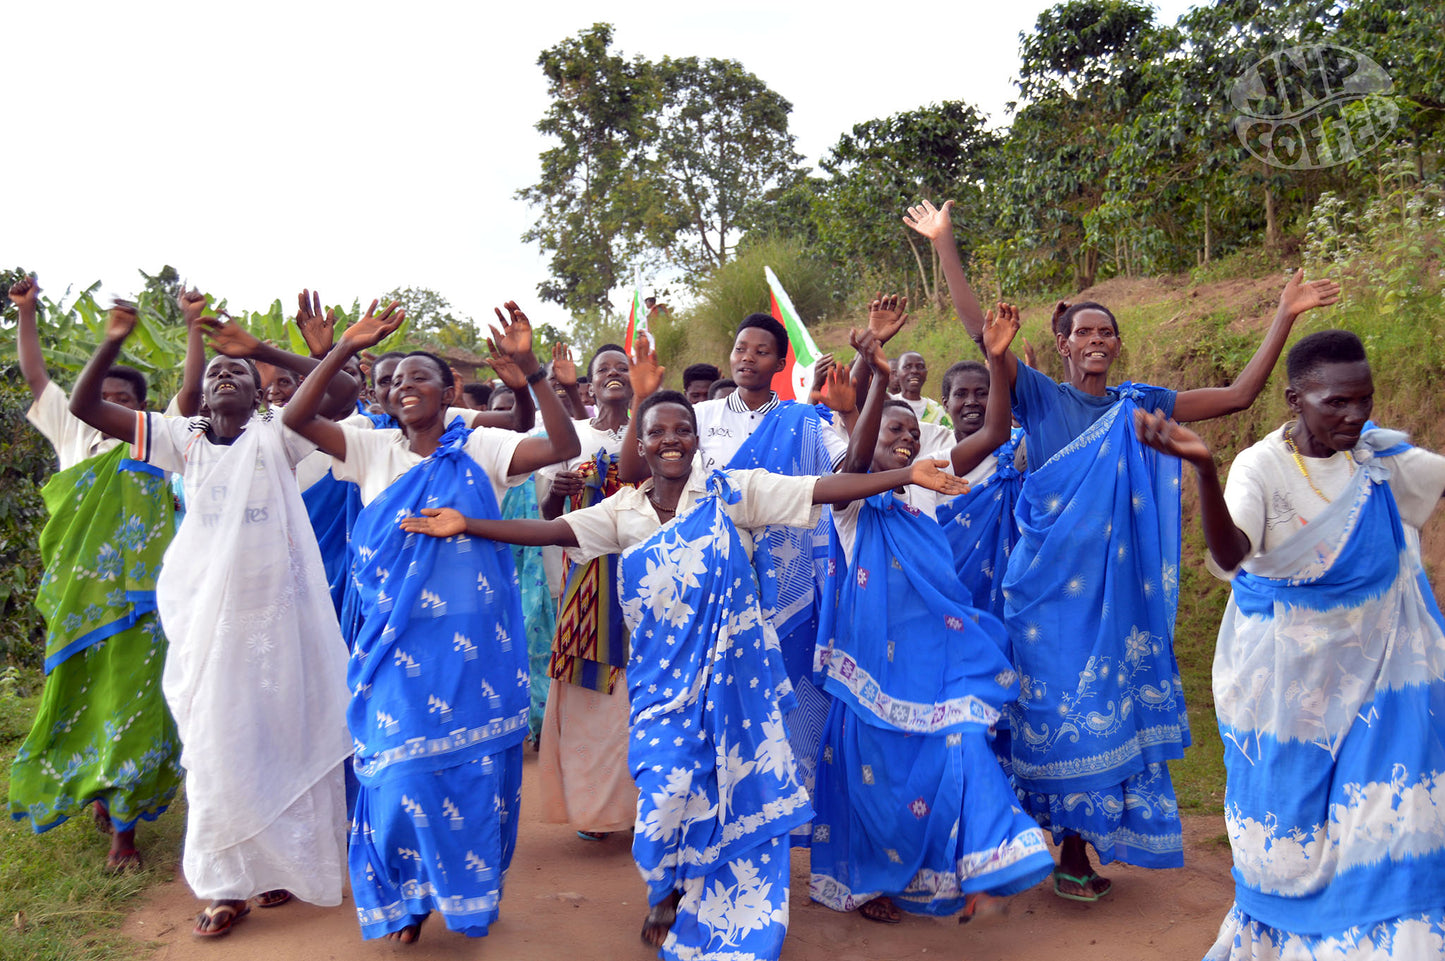 Turihamwe women's group Ngozi Burundi coffee